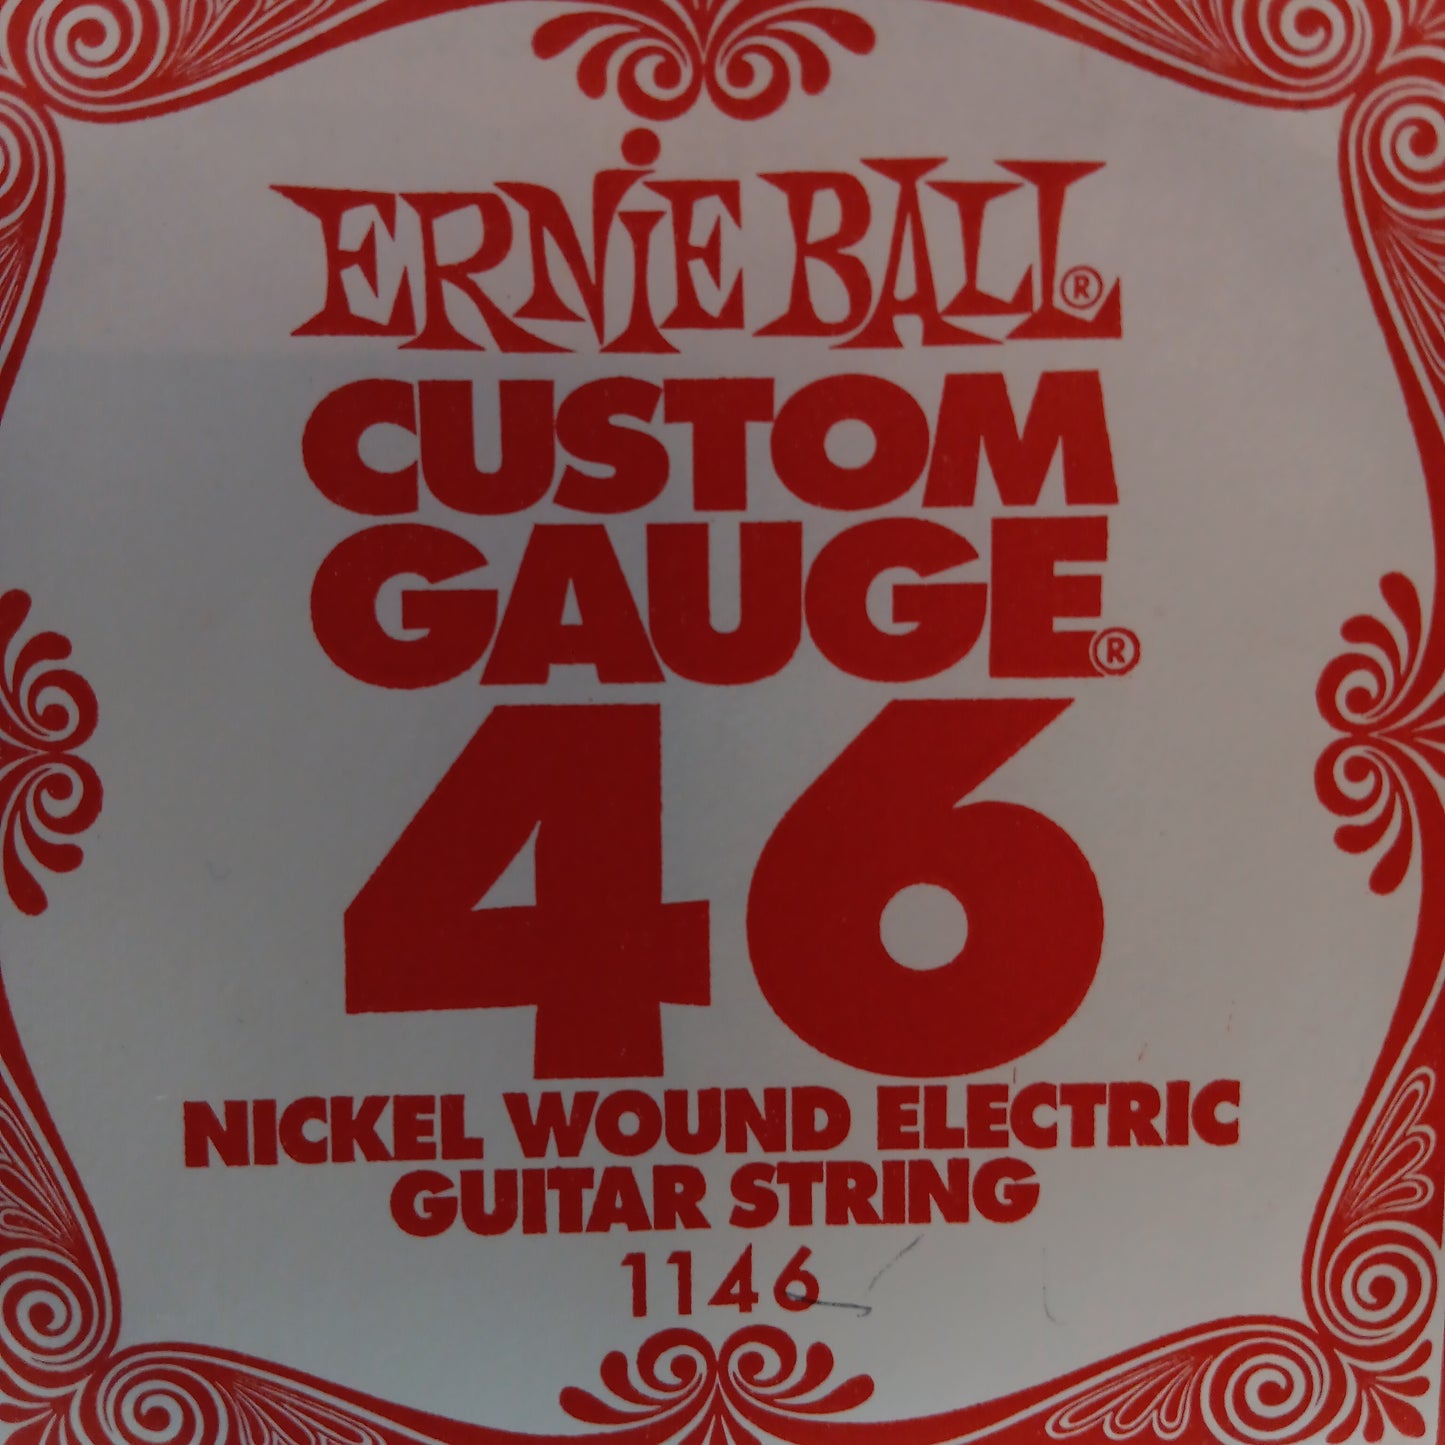 Ernie Ball Custom Gauge Nickel Wound Single Strings 1146/46
Gauge